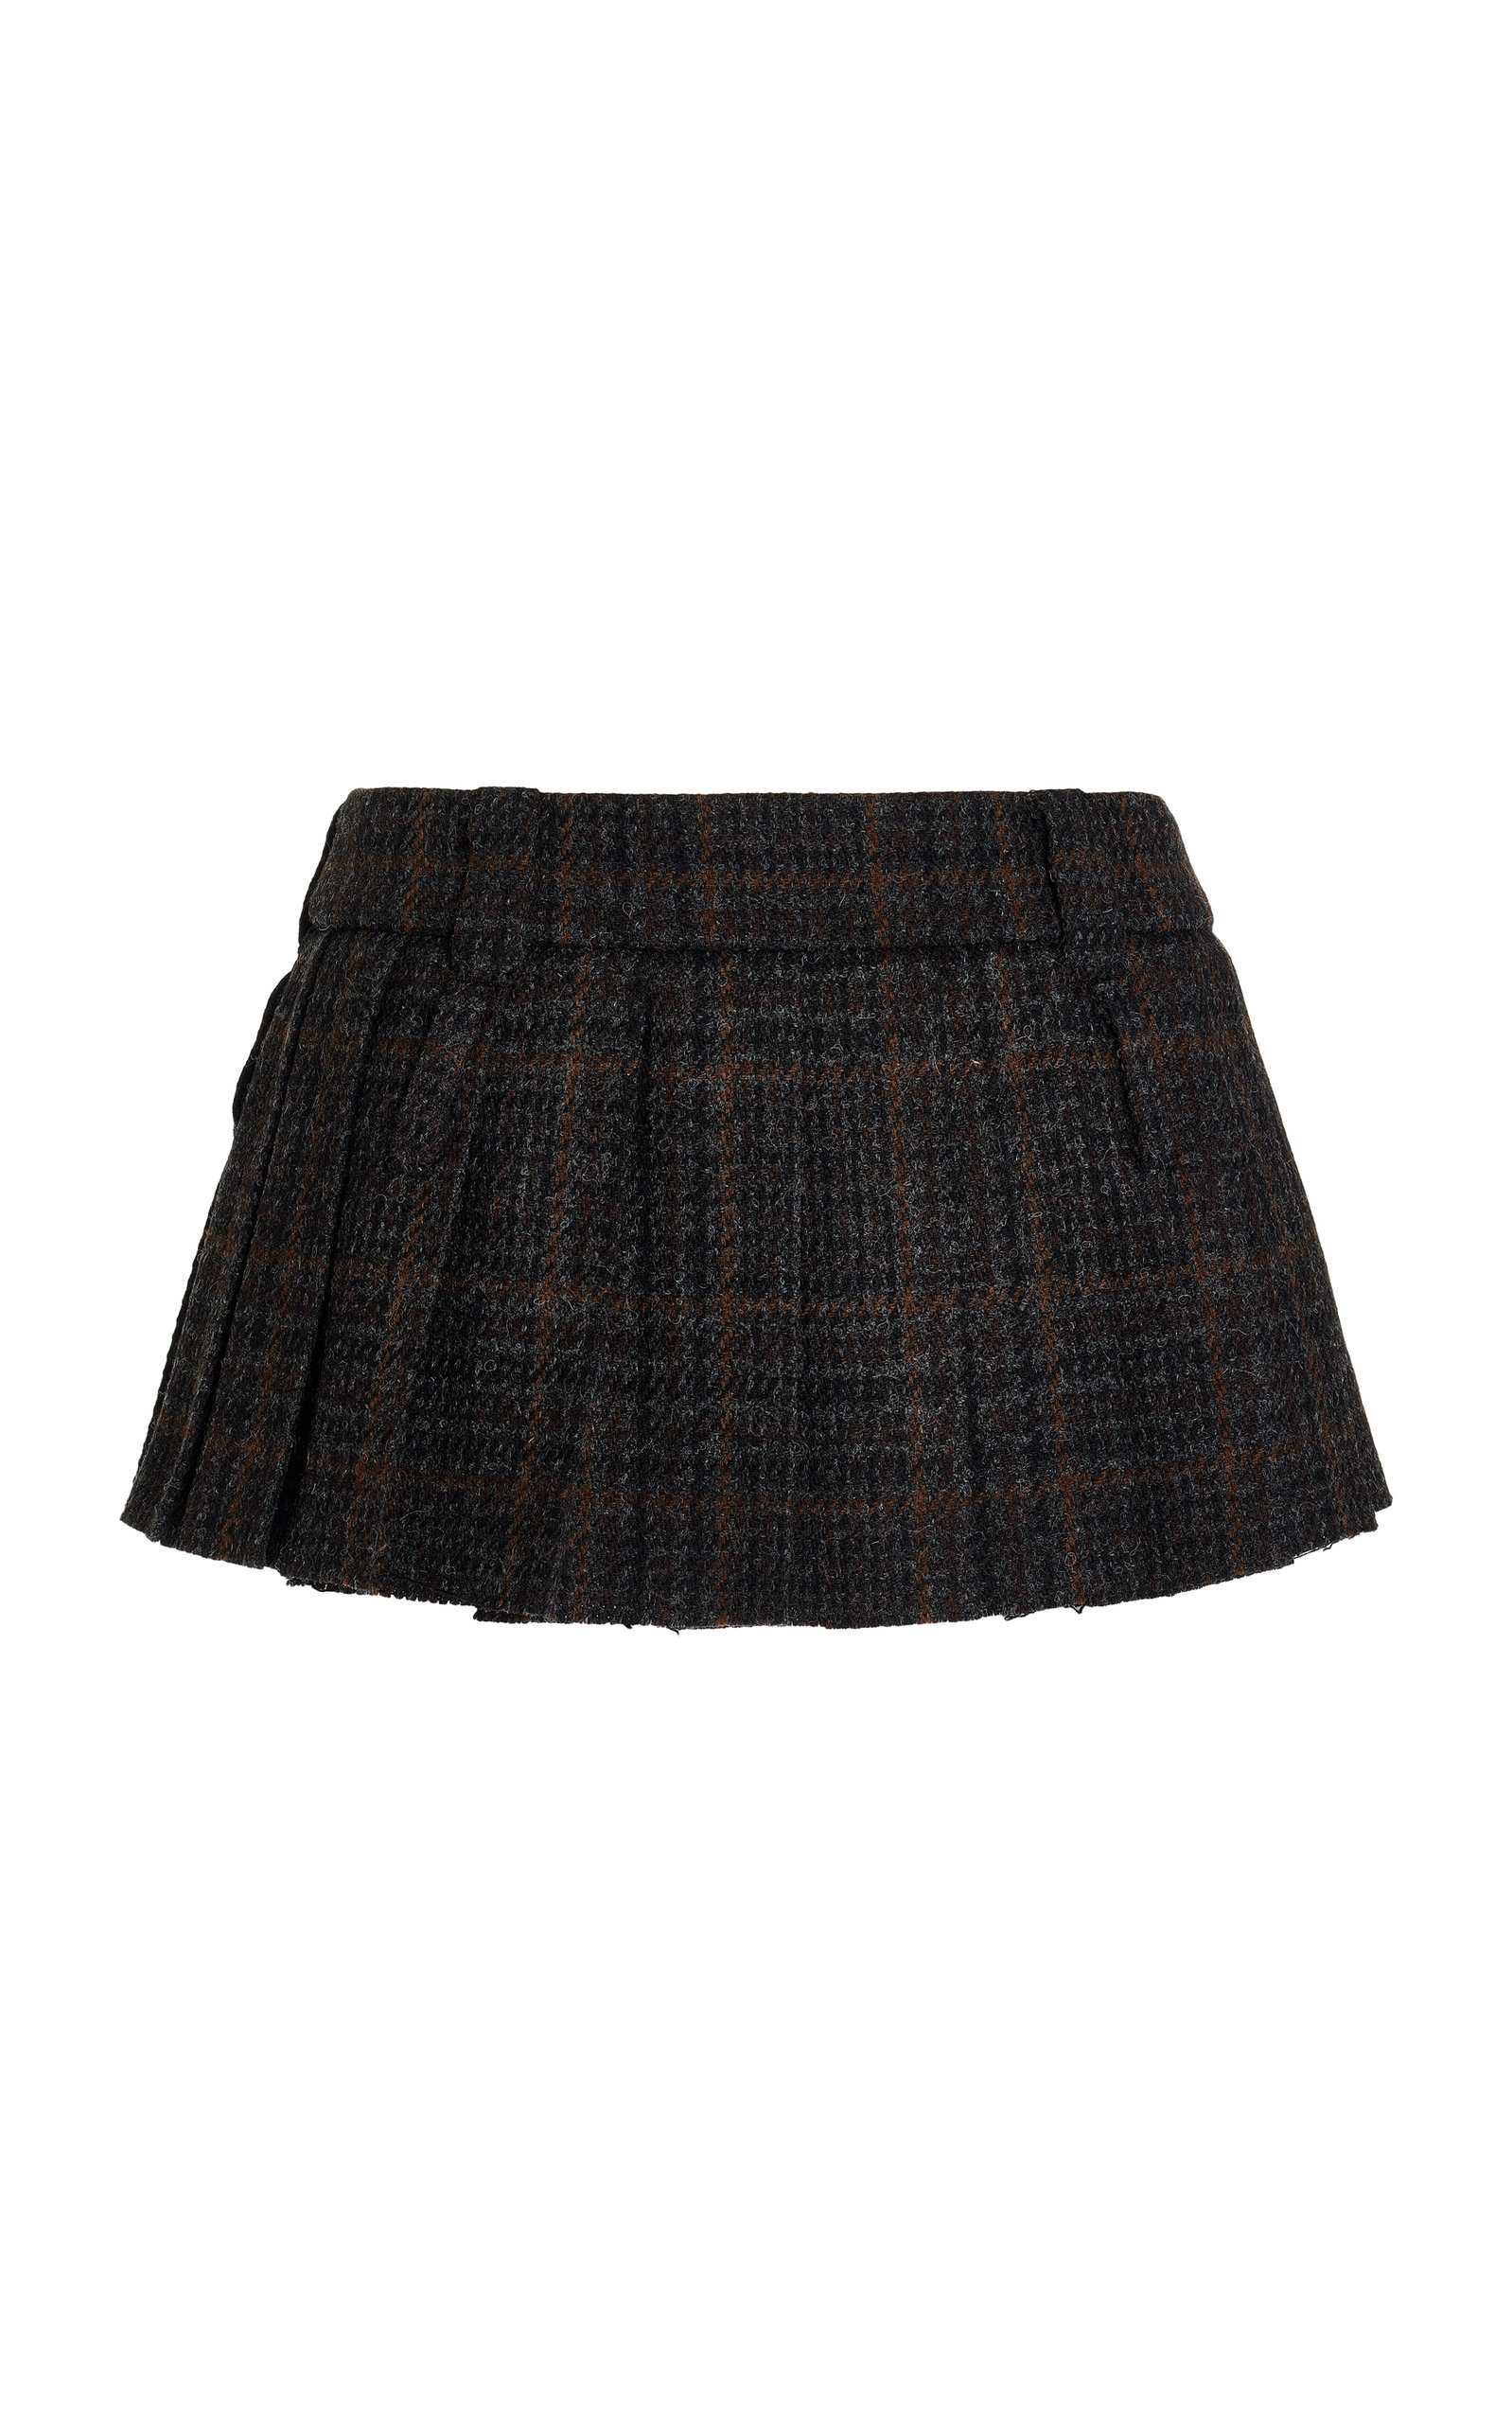 Miu Miu - Plaid Mini Skirt - Plaid - IT 38 - Moda Operandi